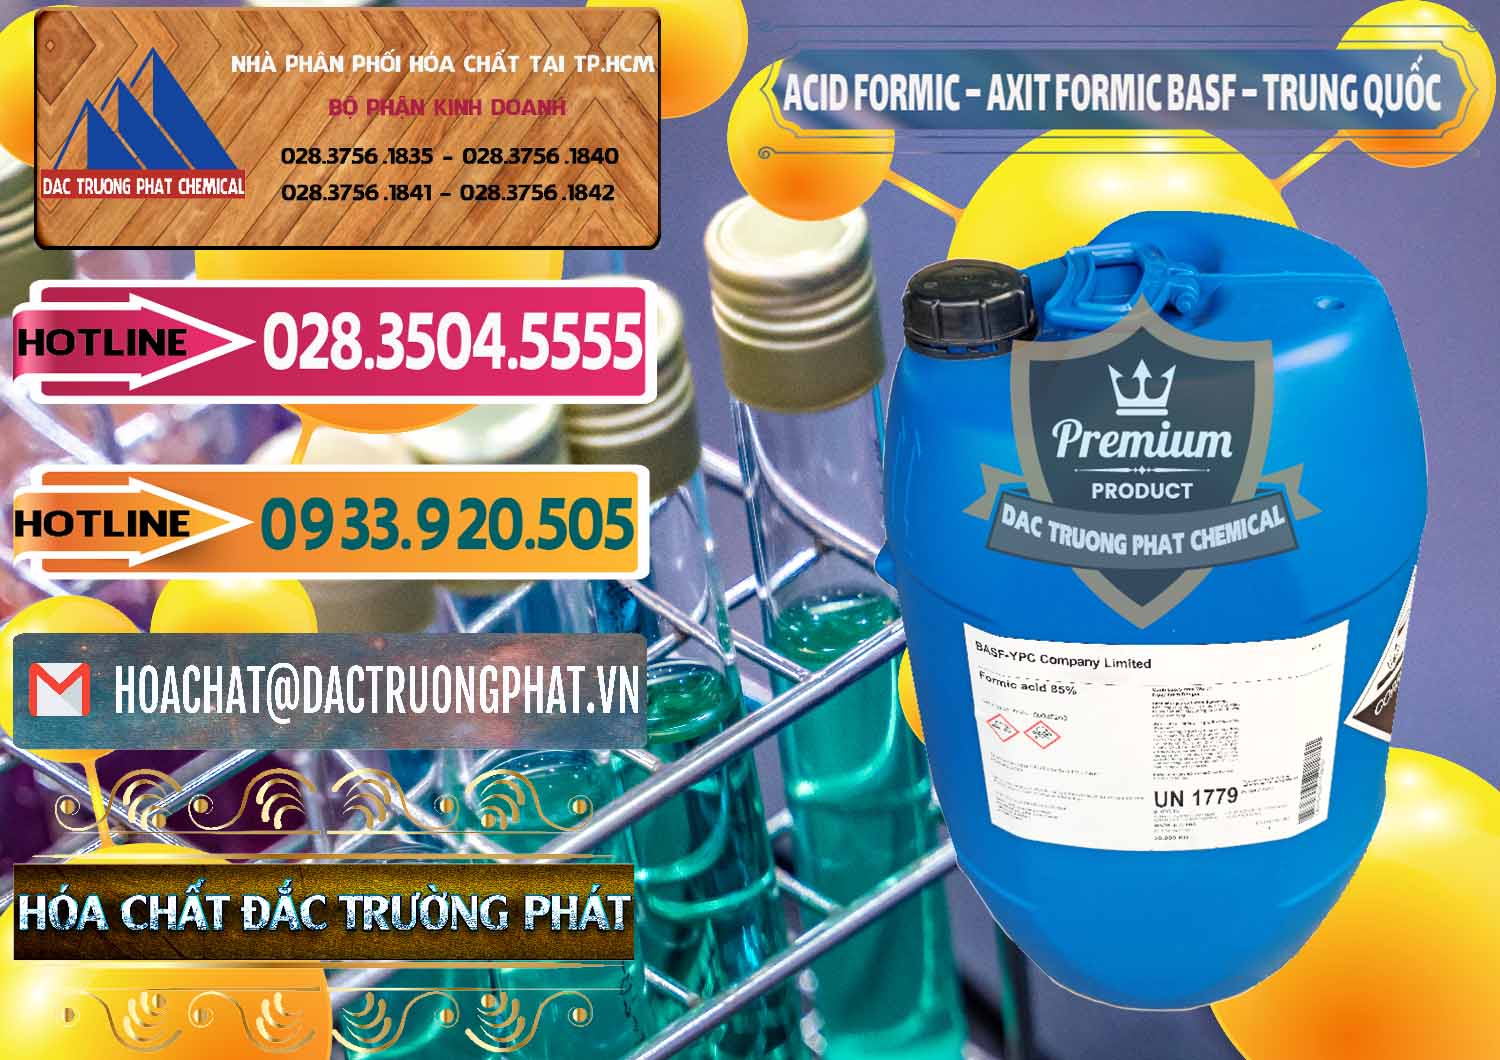 Nơi chuyên cung cấp và bán Acid Formic - Axit Formic BASF Trung Quốc China - 0025 - Đơn vị chuyên cung cấp ( bán ) hóa chất tại TP.HCM - dactruongphat.vn